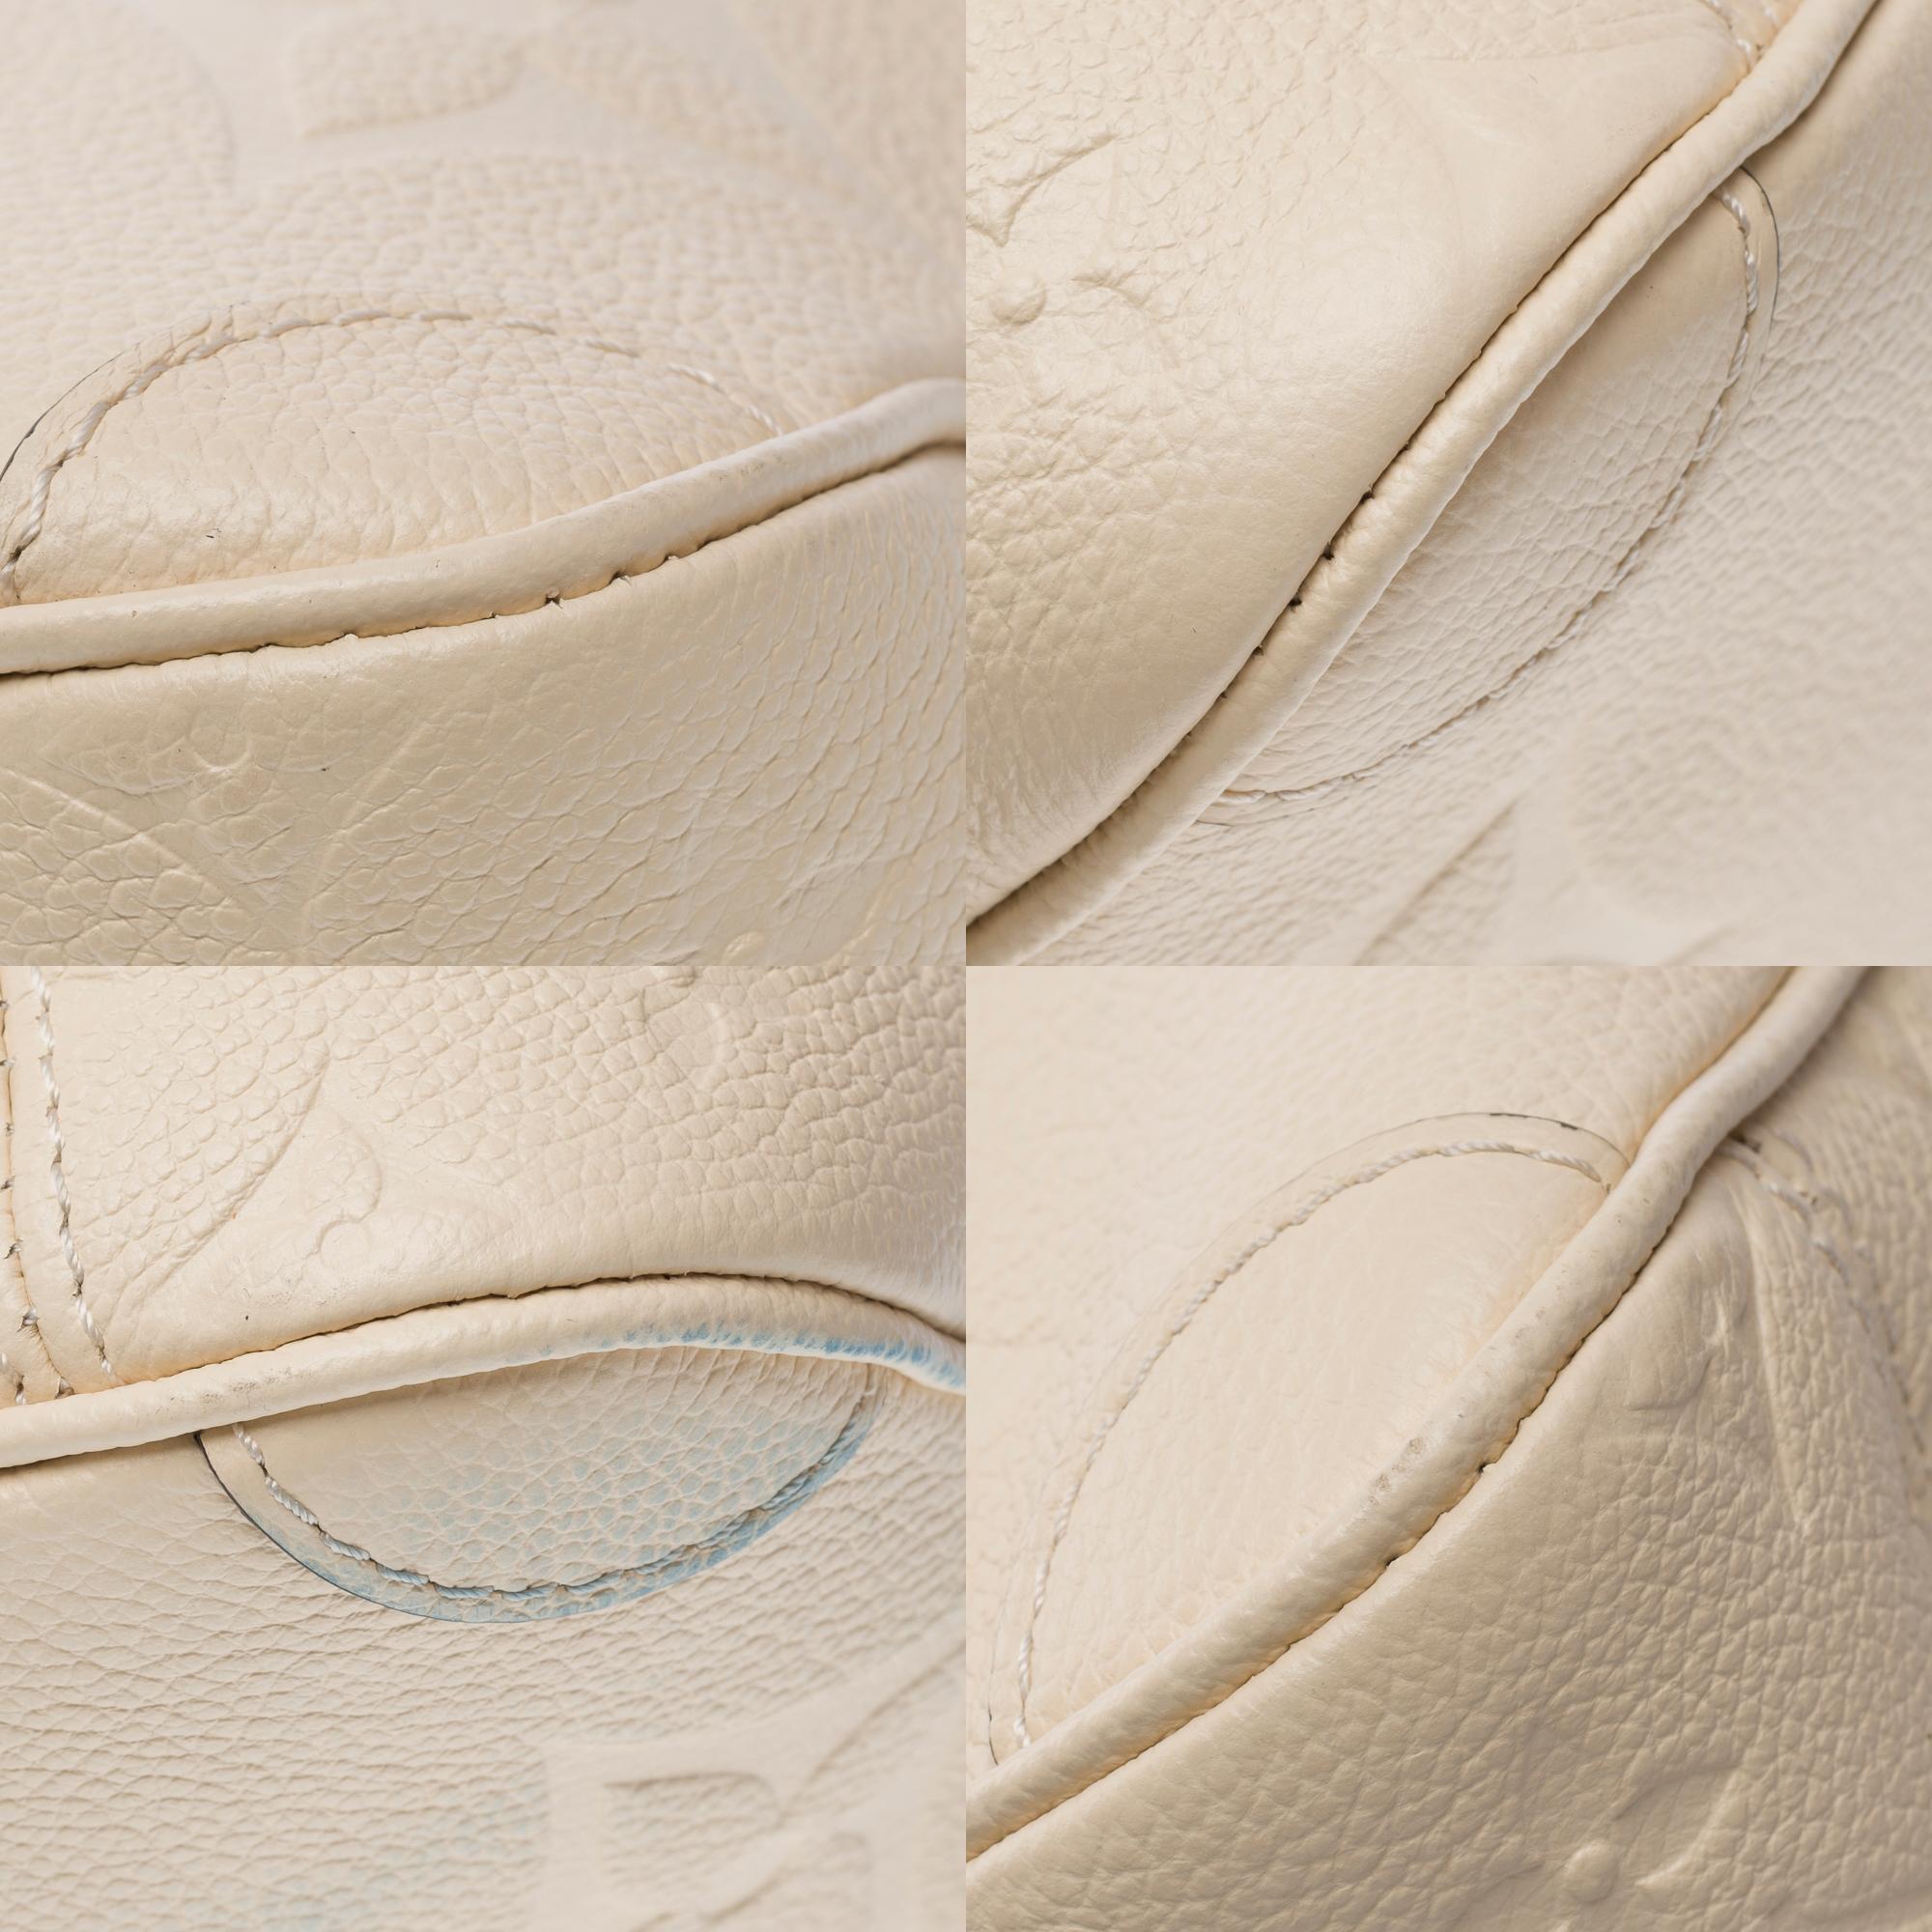 Louis Vuitton Trianon PM handbag strap in Cream White monogram calf leather, GHW For Sale 7